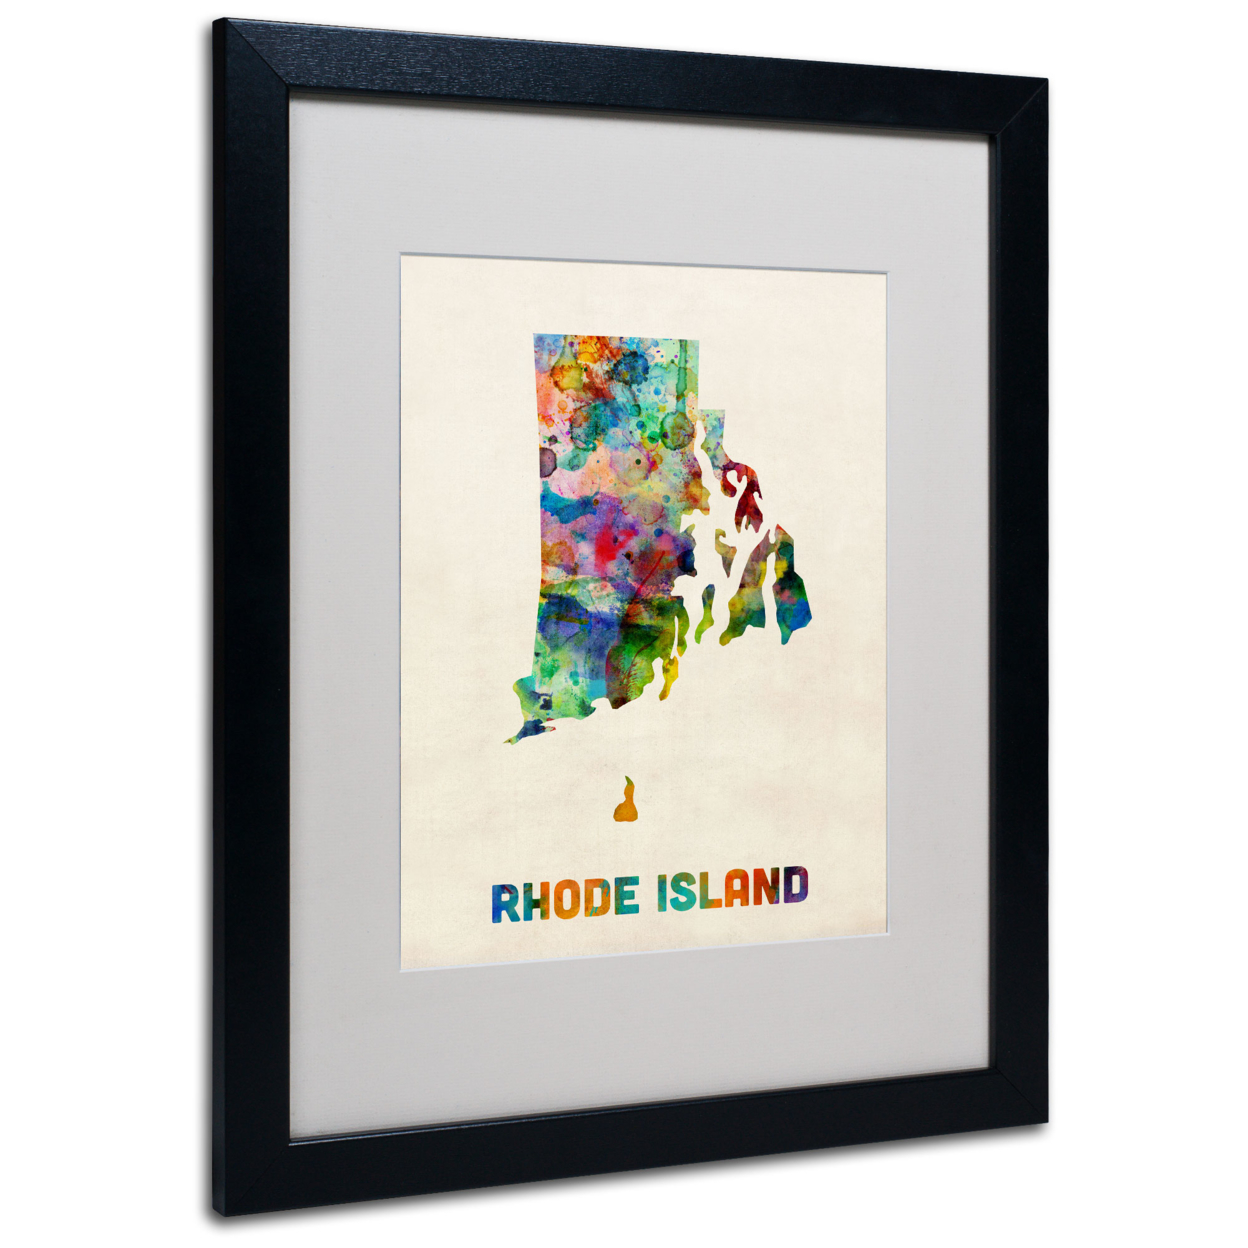 Michael Tompsett 'Rhode Island Map' Black Wooden Framed Art 18 X 22 Inches